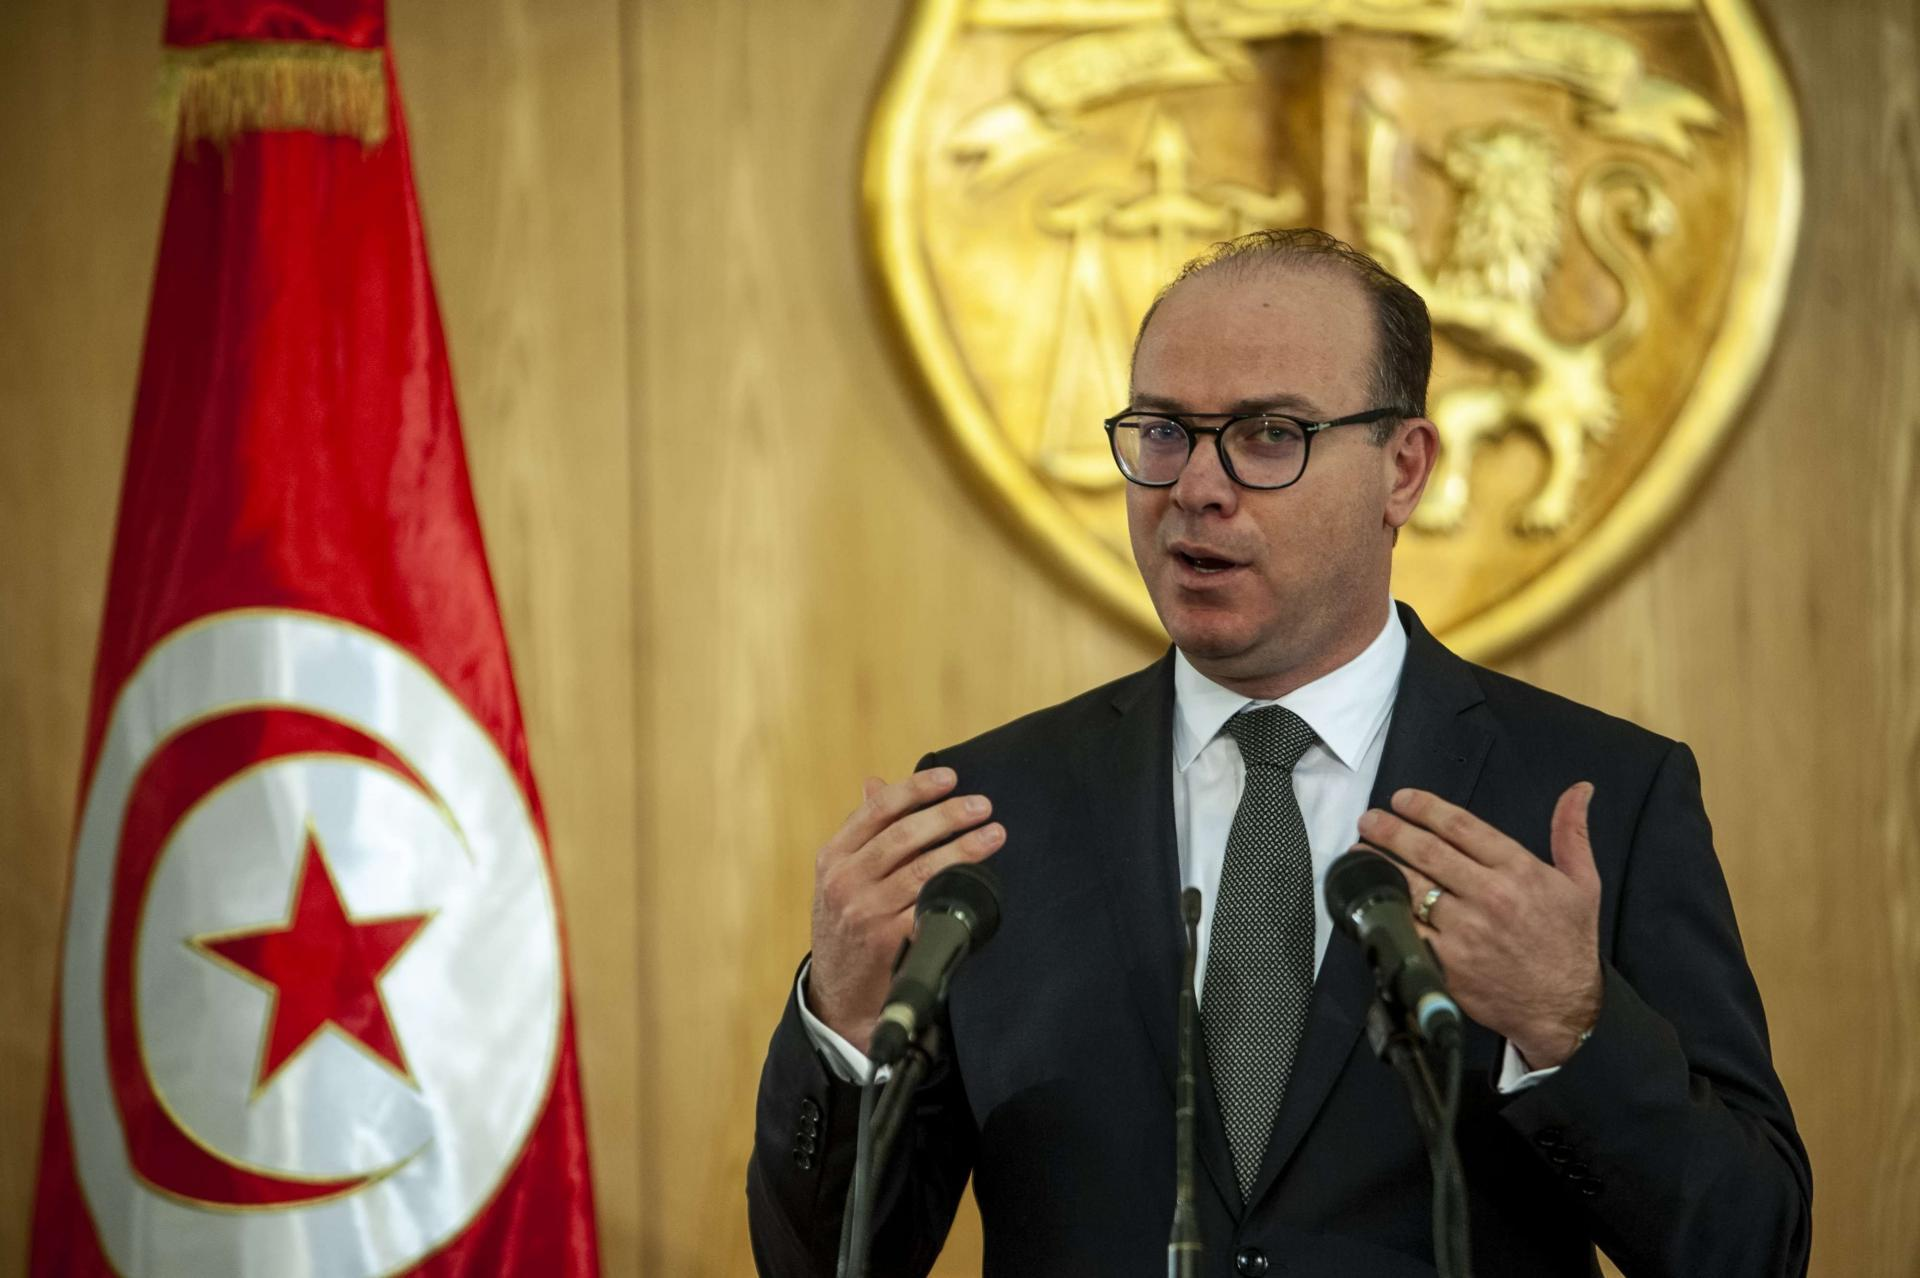 #تونس | #مجلس_الوزراء يصادق على مشاريع #مراسيم وأوامر حكومية ذات صبغة اقتصادية واجتماعية